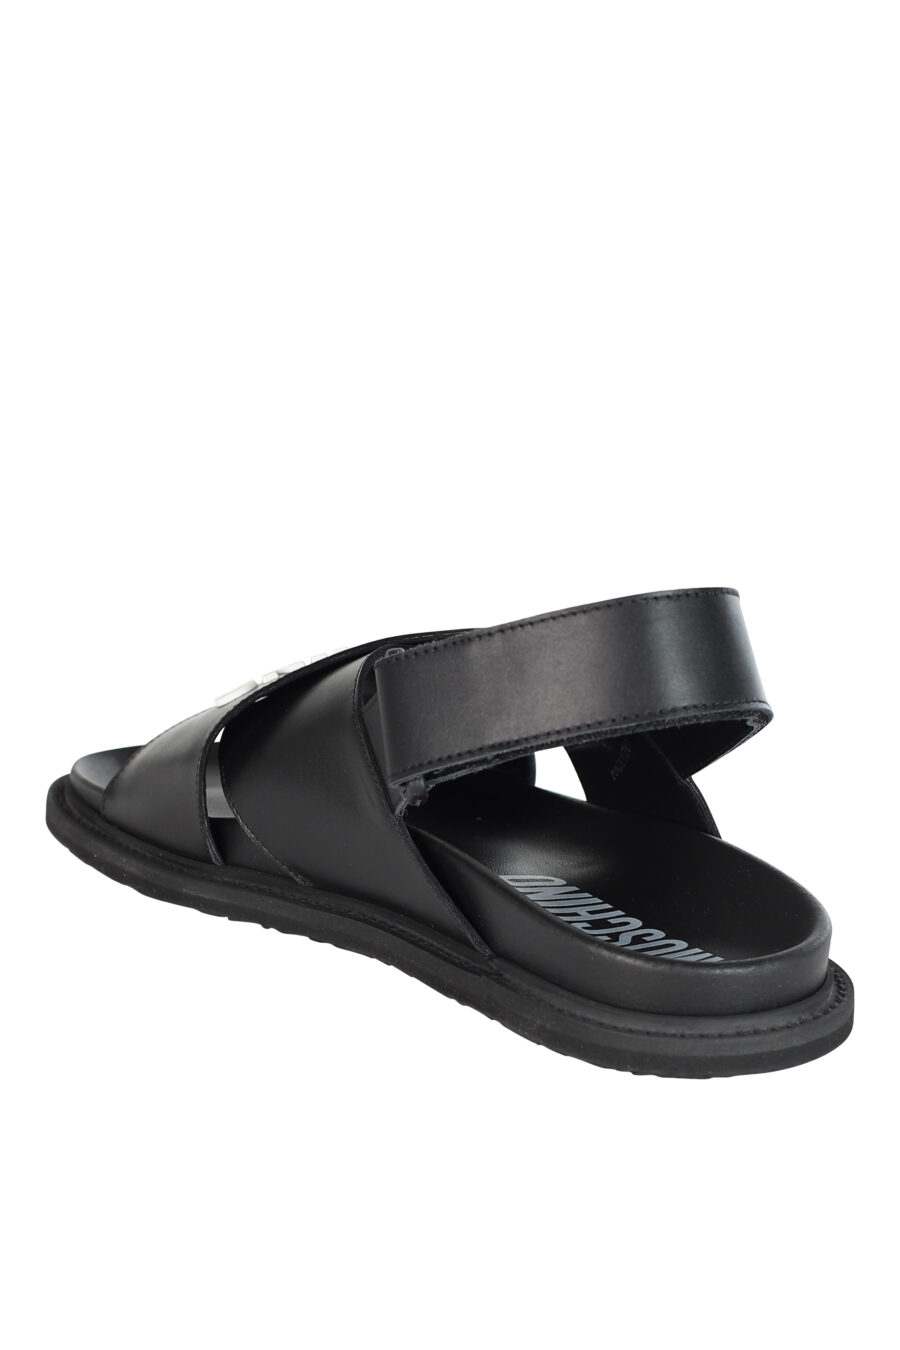 Sandales noires croisées avec maxilogo blanc - 8059022514769 4